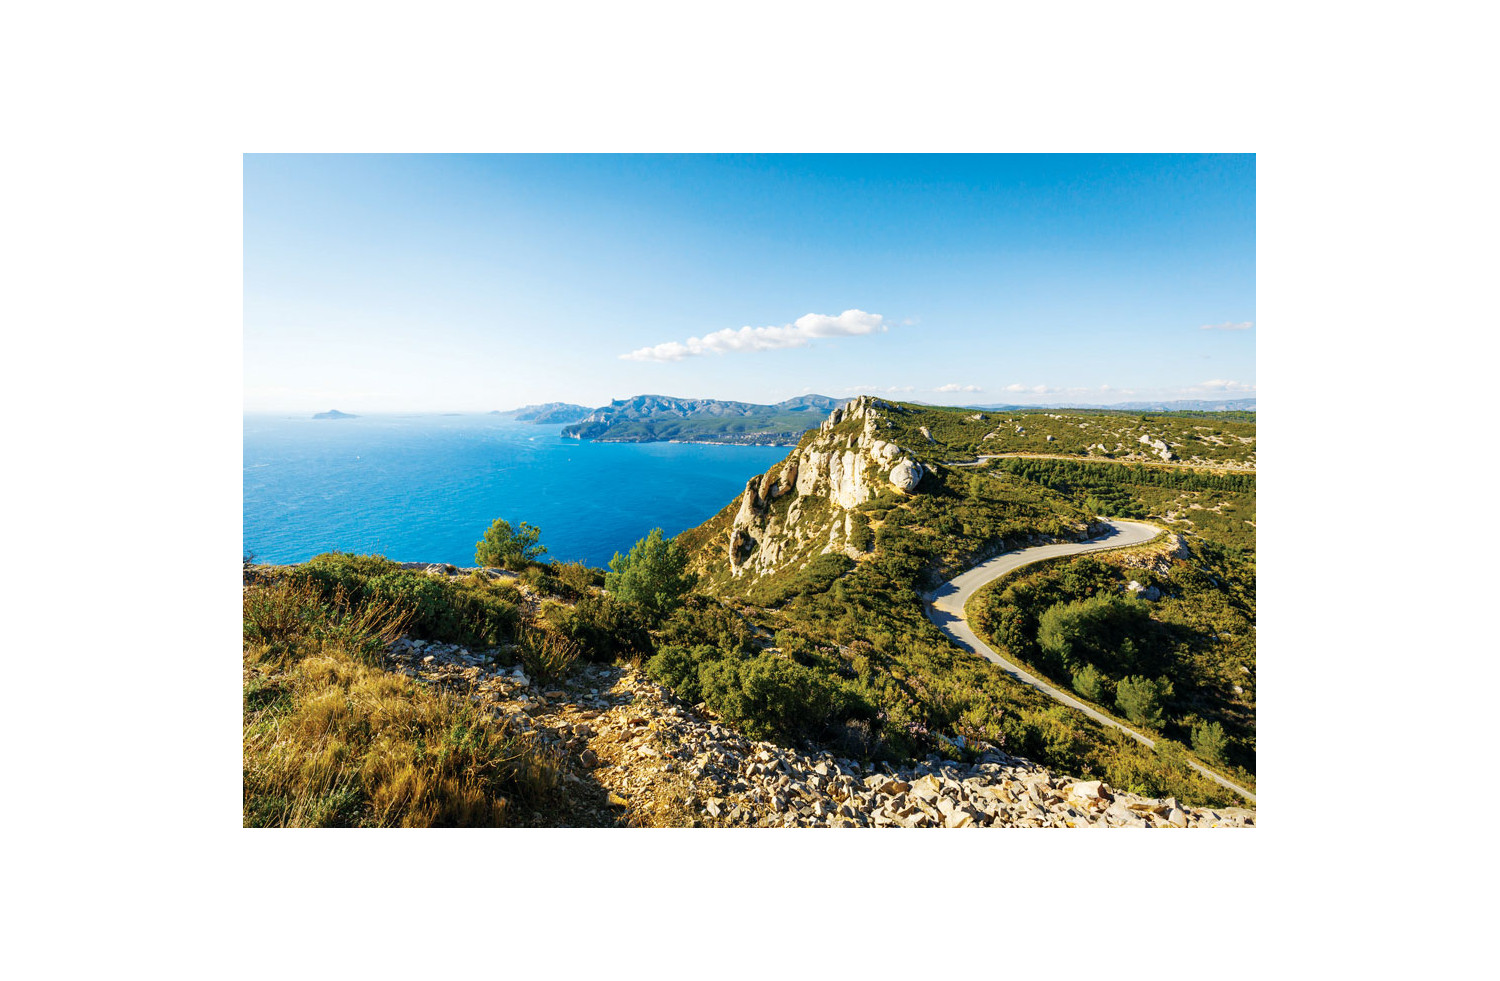 St Tropez, Île de Porquerolles, Calanques de Cassis